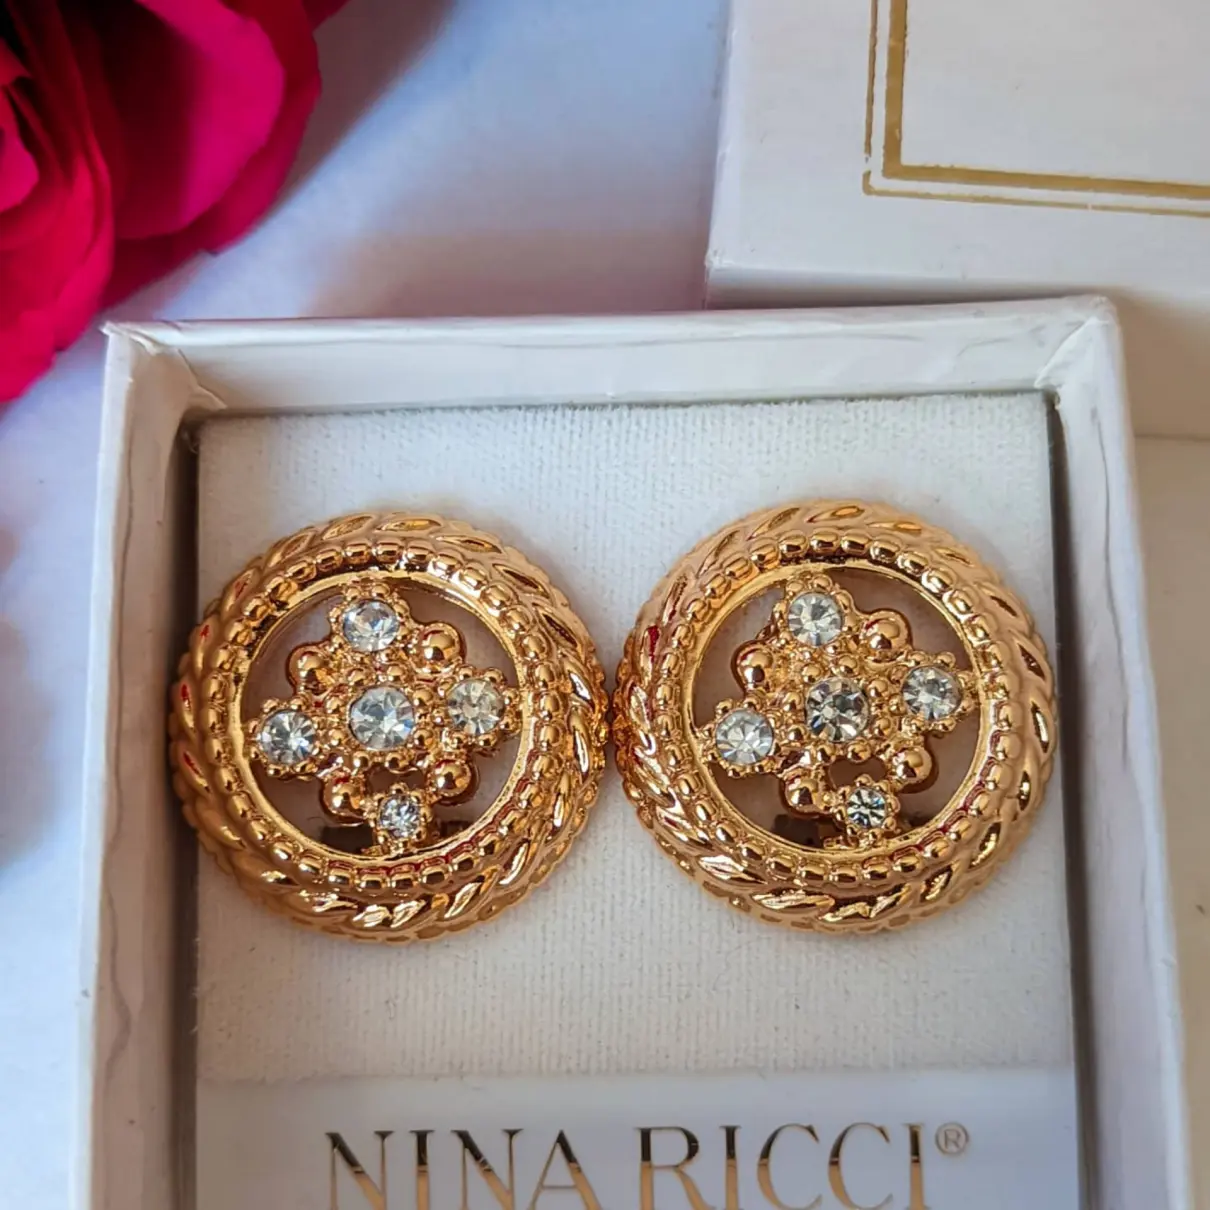 Buy Nina Ricci Earrings online - Vintage